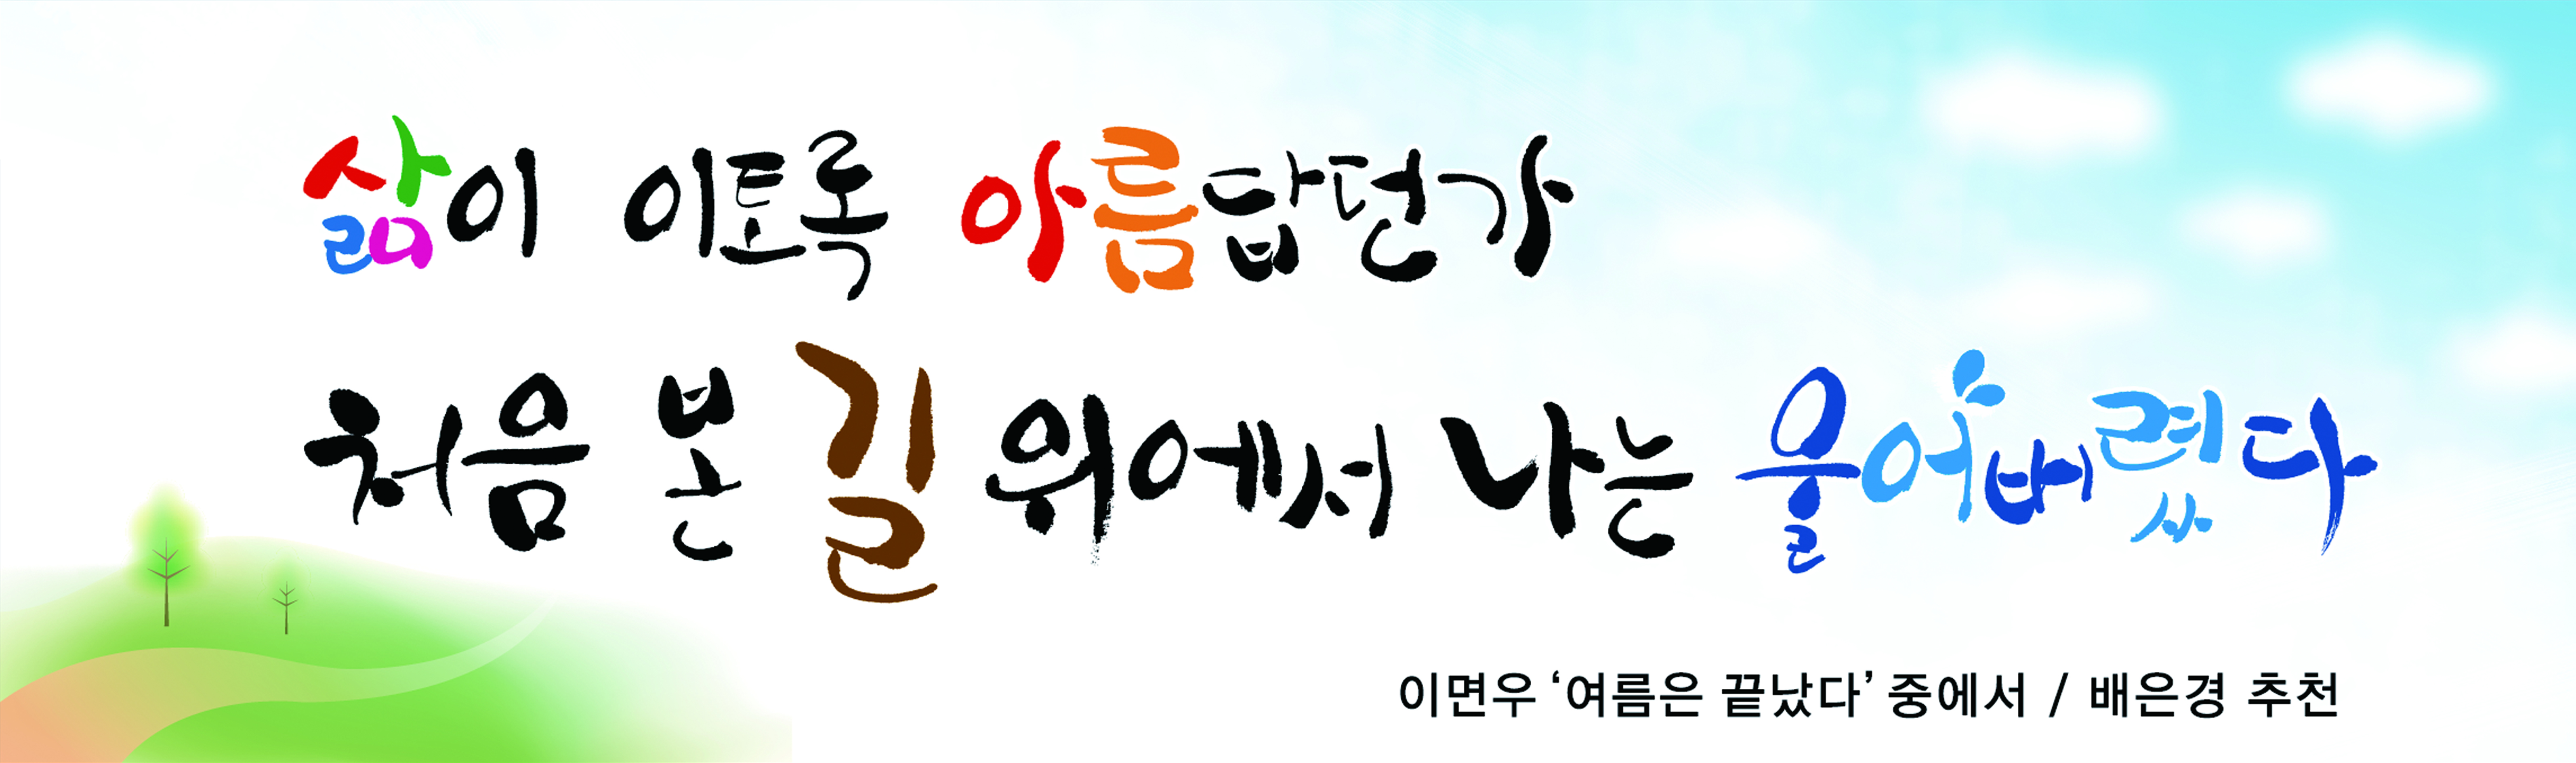 2016년 부산문화글판 여름편썸네일